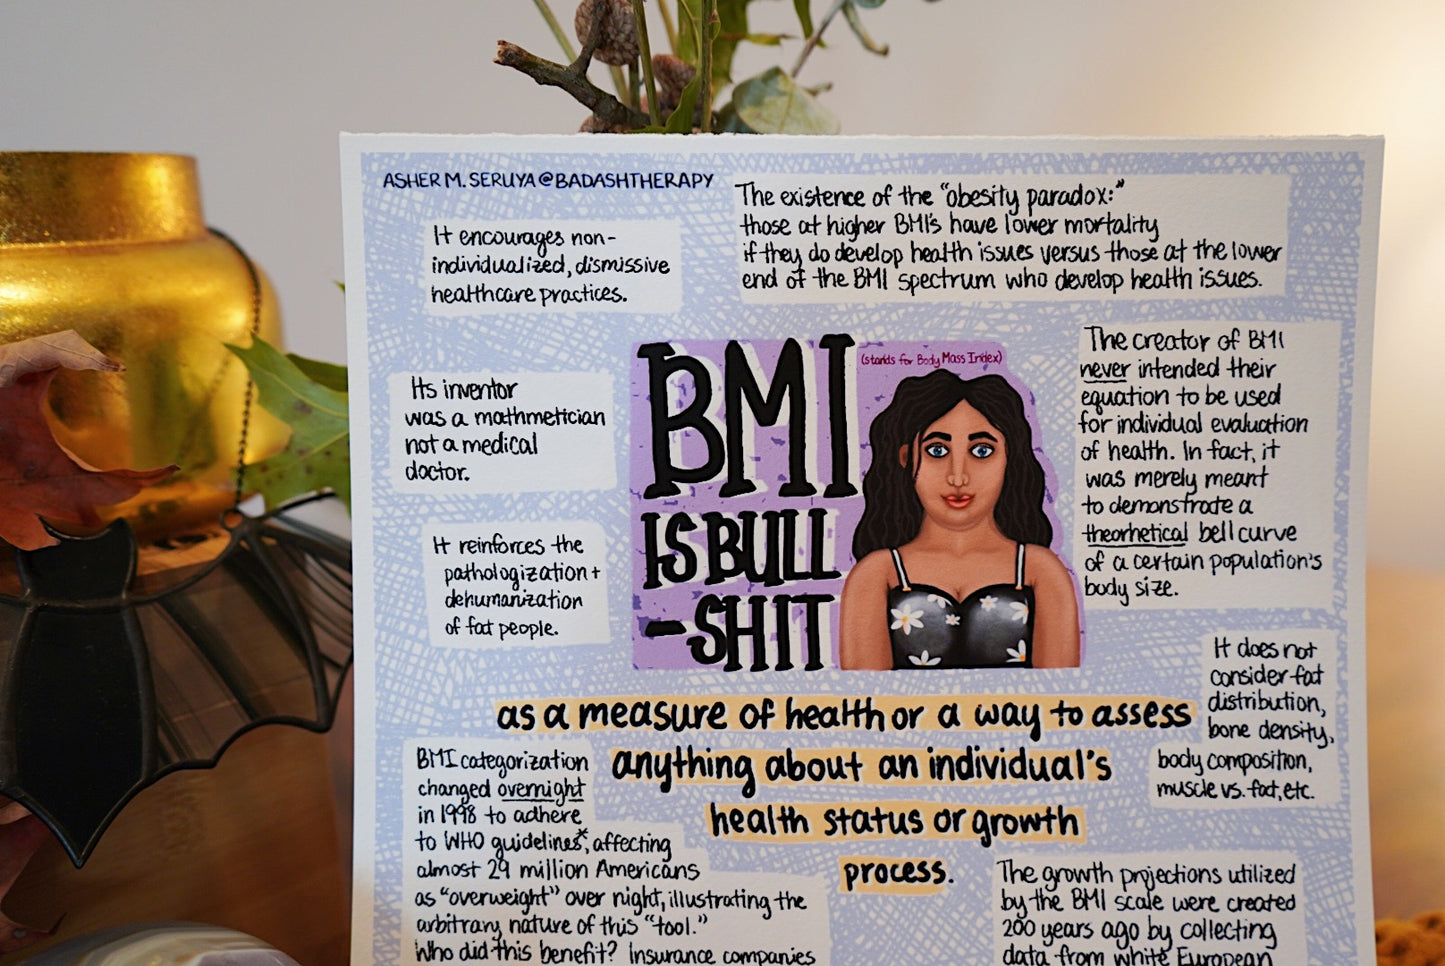 BMI is Bullshit